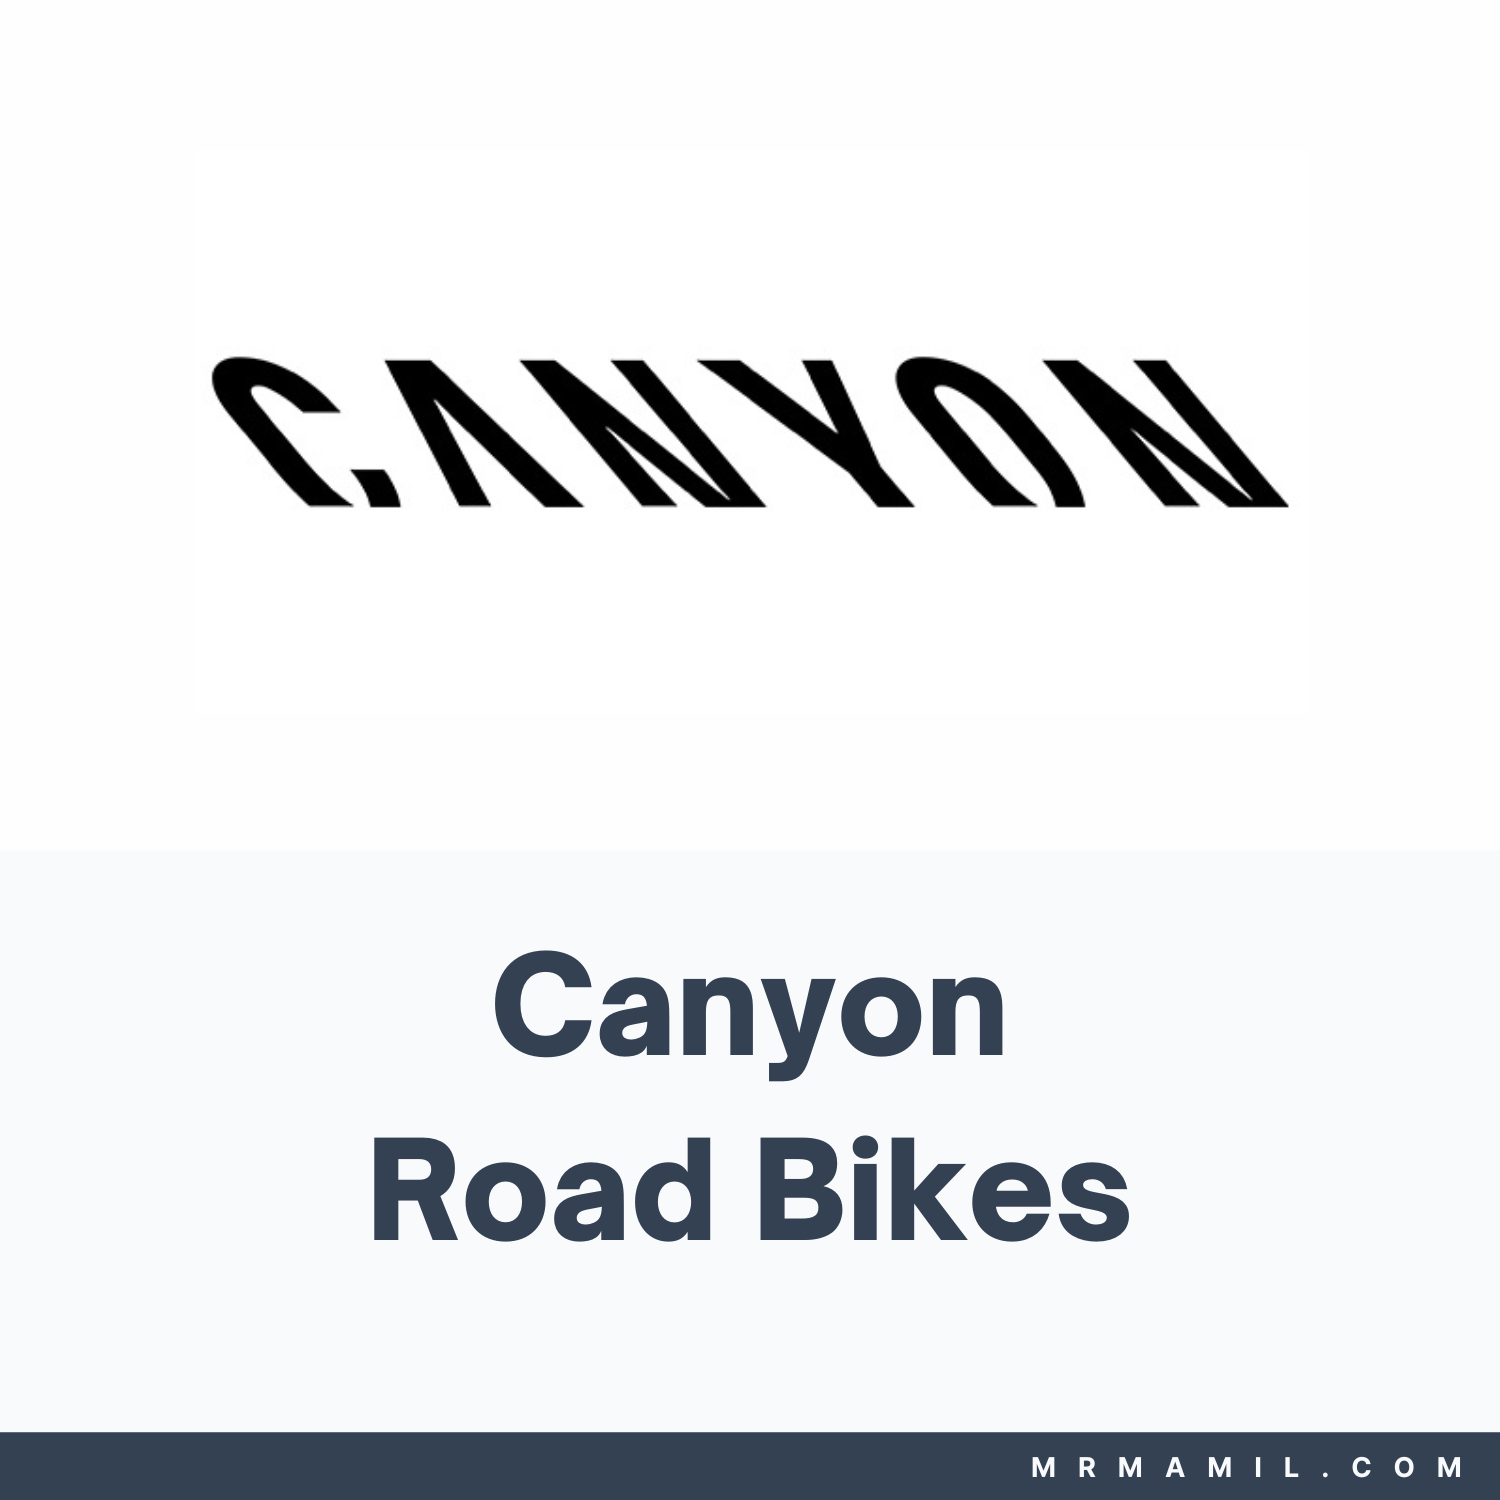 Canyon Road Bikes Lineup (Canyon Aeroad vs Ultimate vs Endurace Road Bikes)